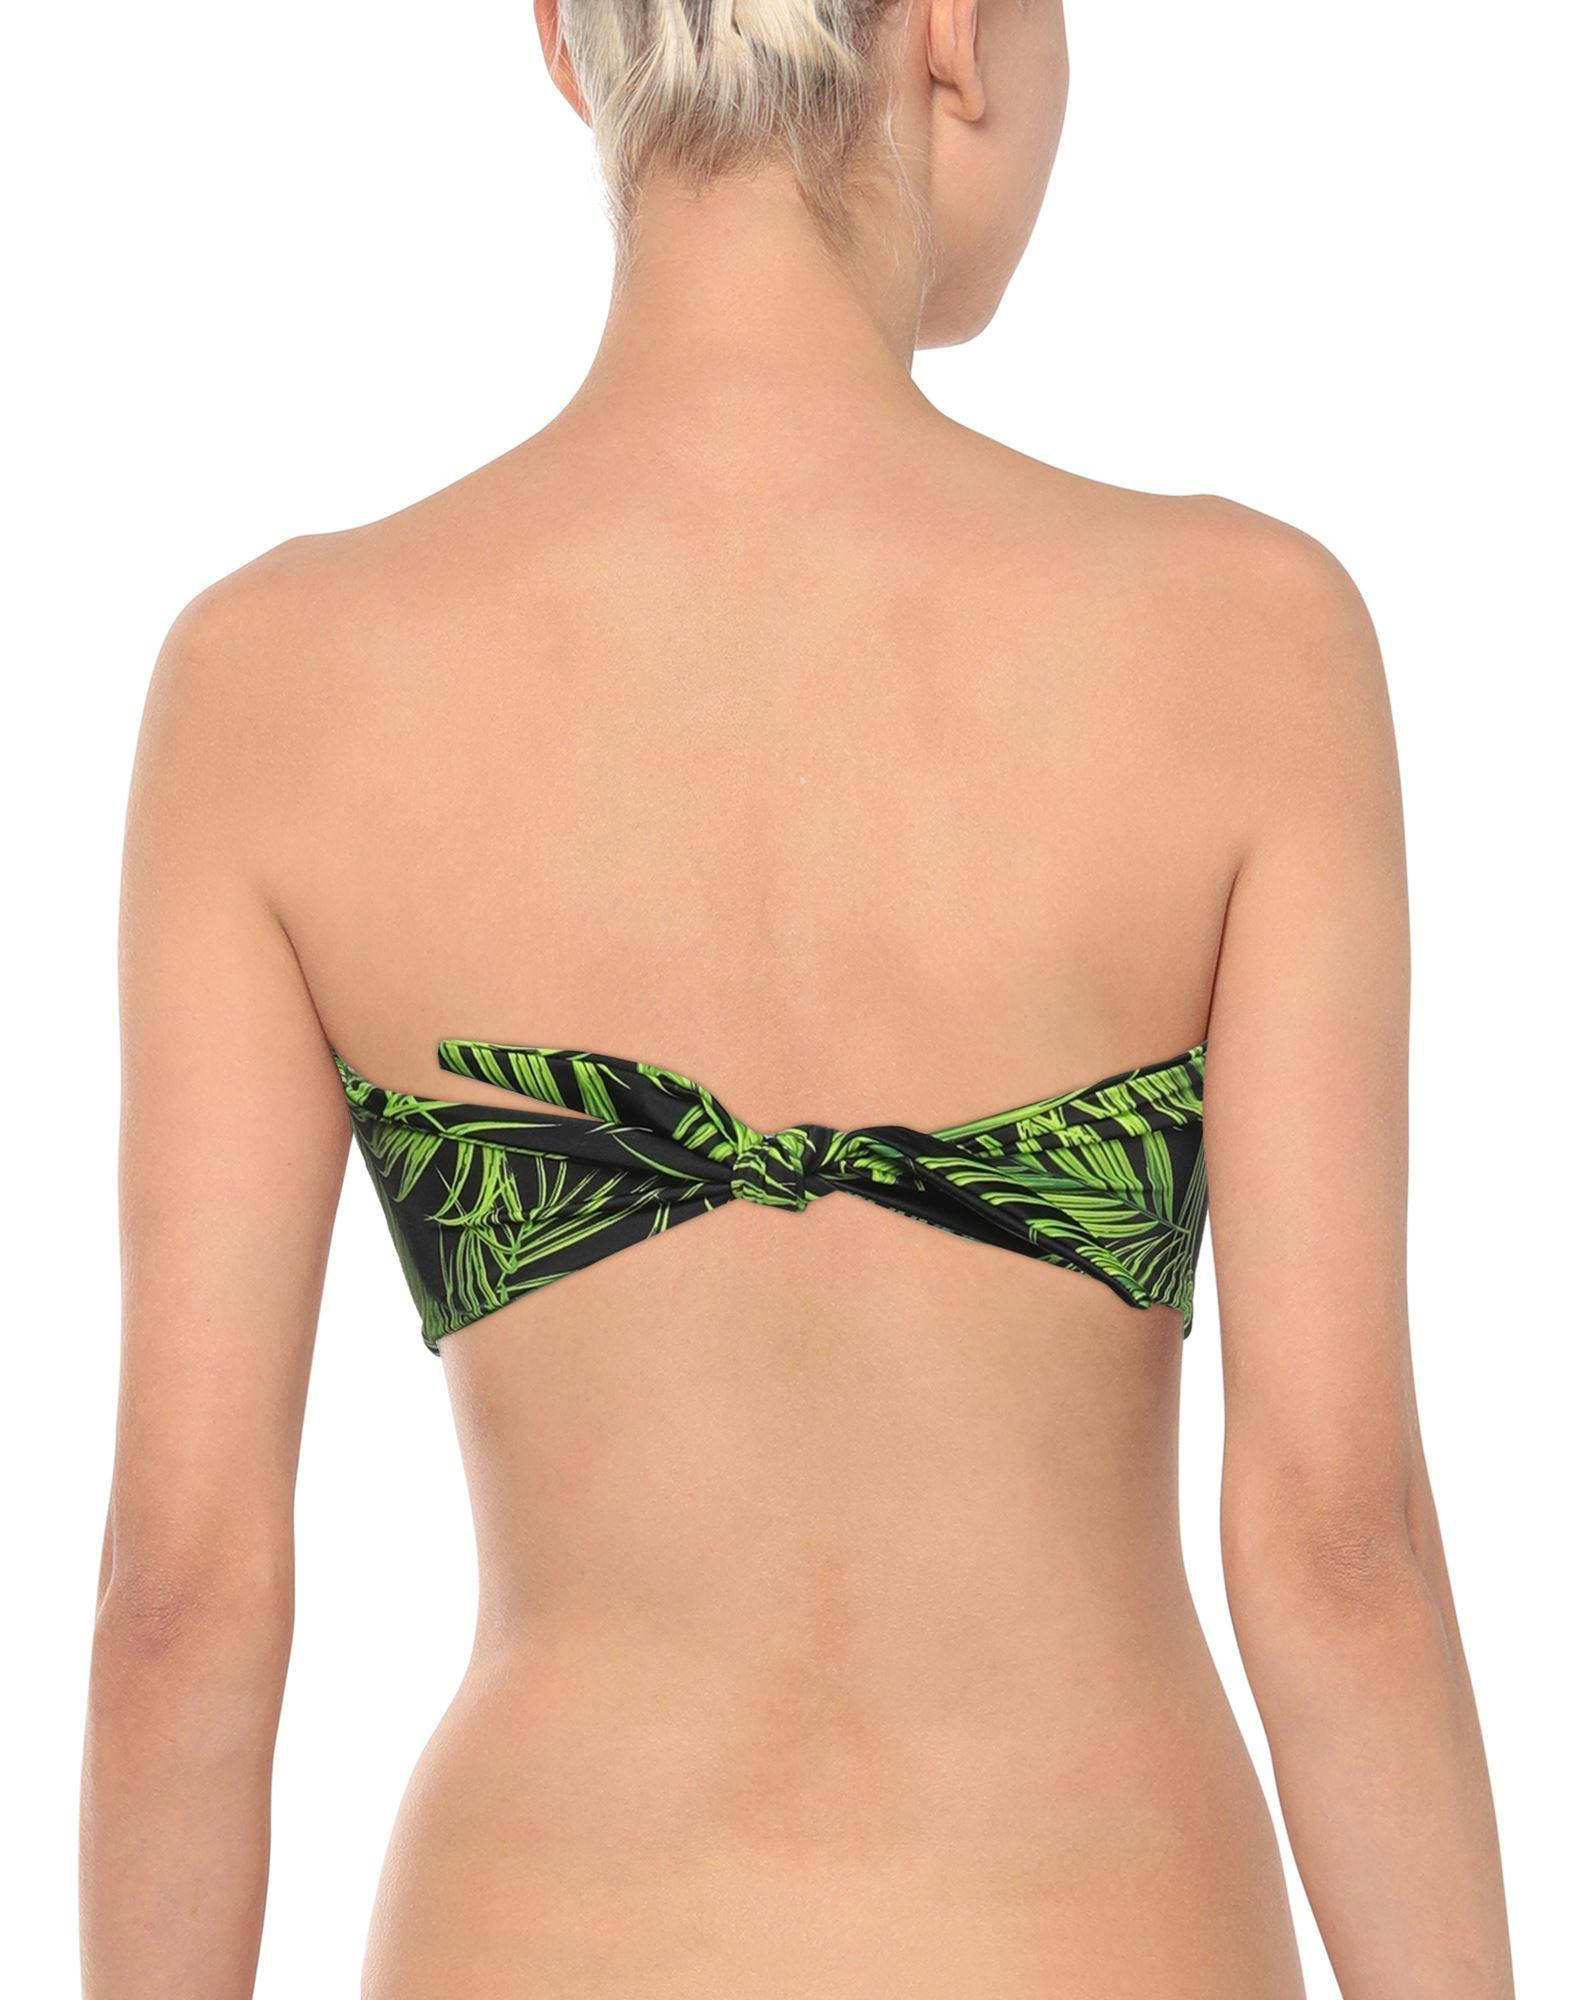 Damen Bekleidung Bademode und Strandmode Norma Kamali Synthetik Bedrucktes Bikini-Höschen in Grün 